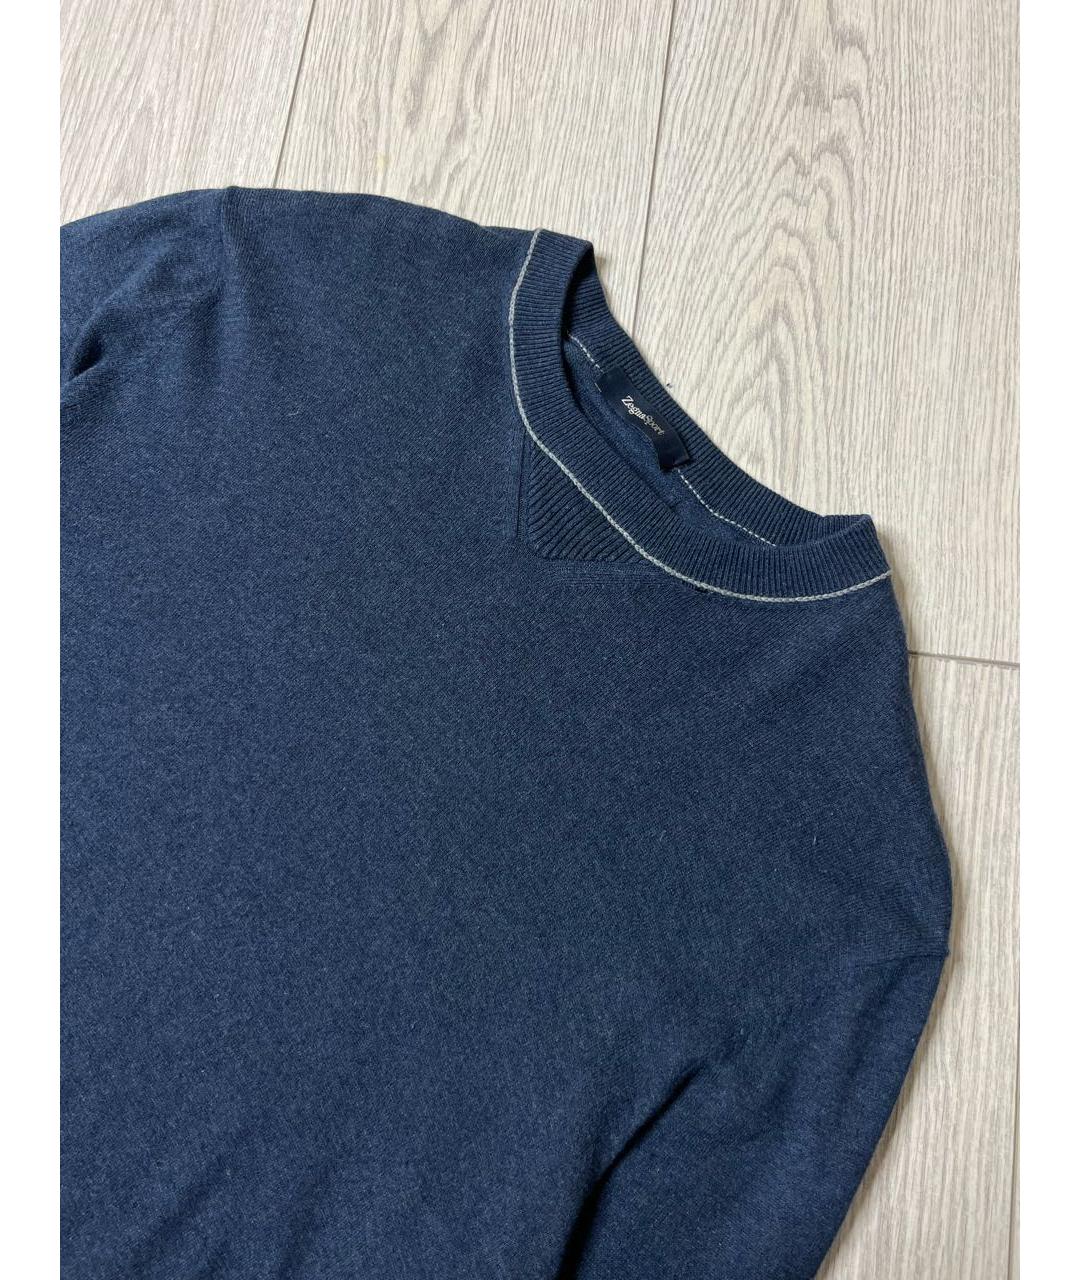 ZEGNA SPORT Темно-синий кашемировый джемпер / свитер, фото 3